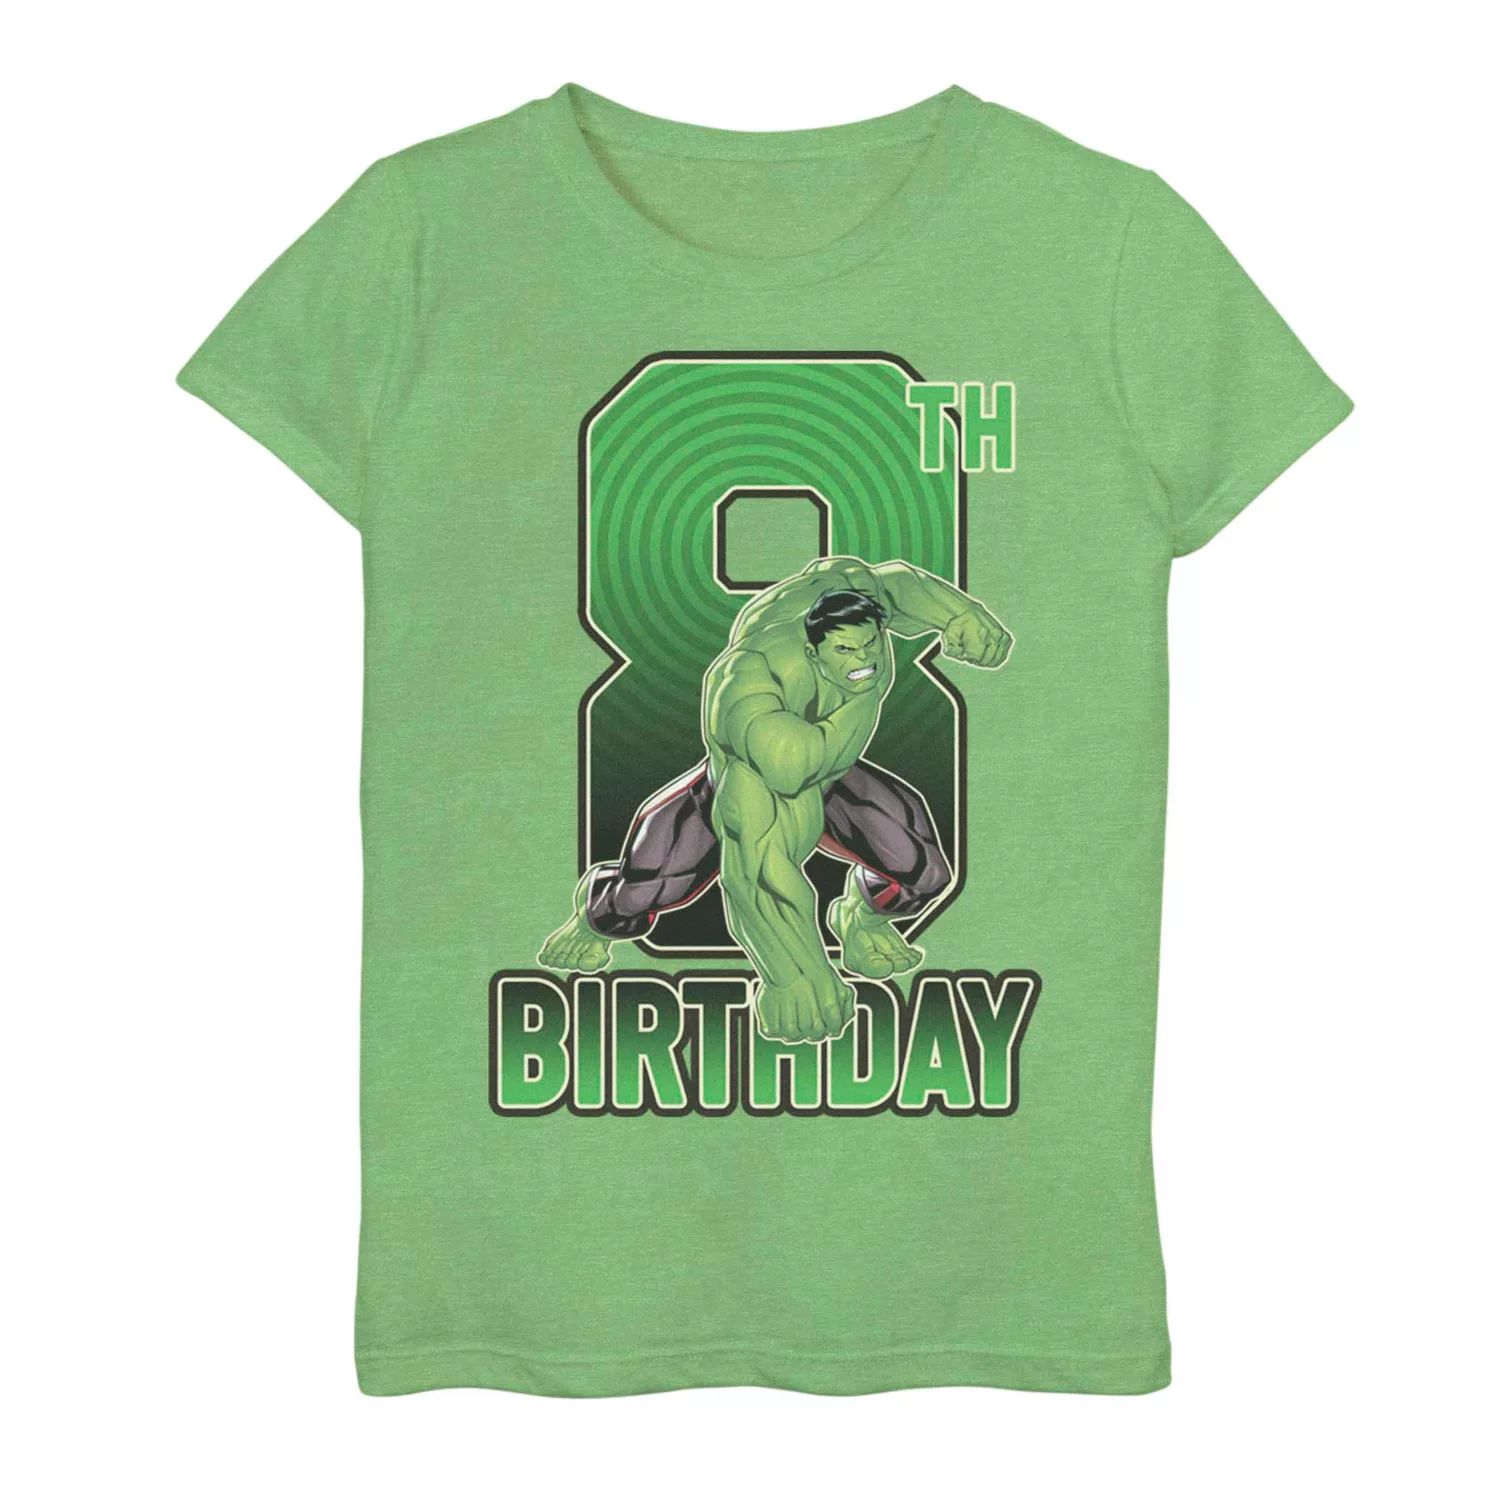 Футболка на 8-й день рождения для девочек 7–16 лет с изображением Марвел Халка Licensed Character футболка с изображением рожденного февраля 1950 года ограниченный выпуск подарки на 70 й день рождения футболка